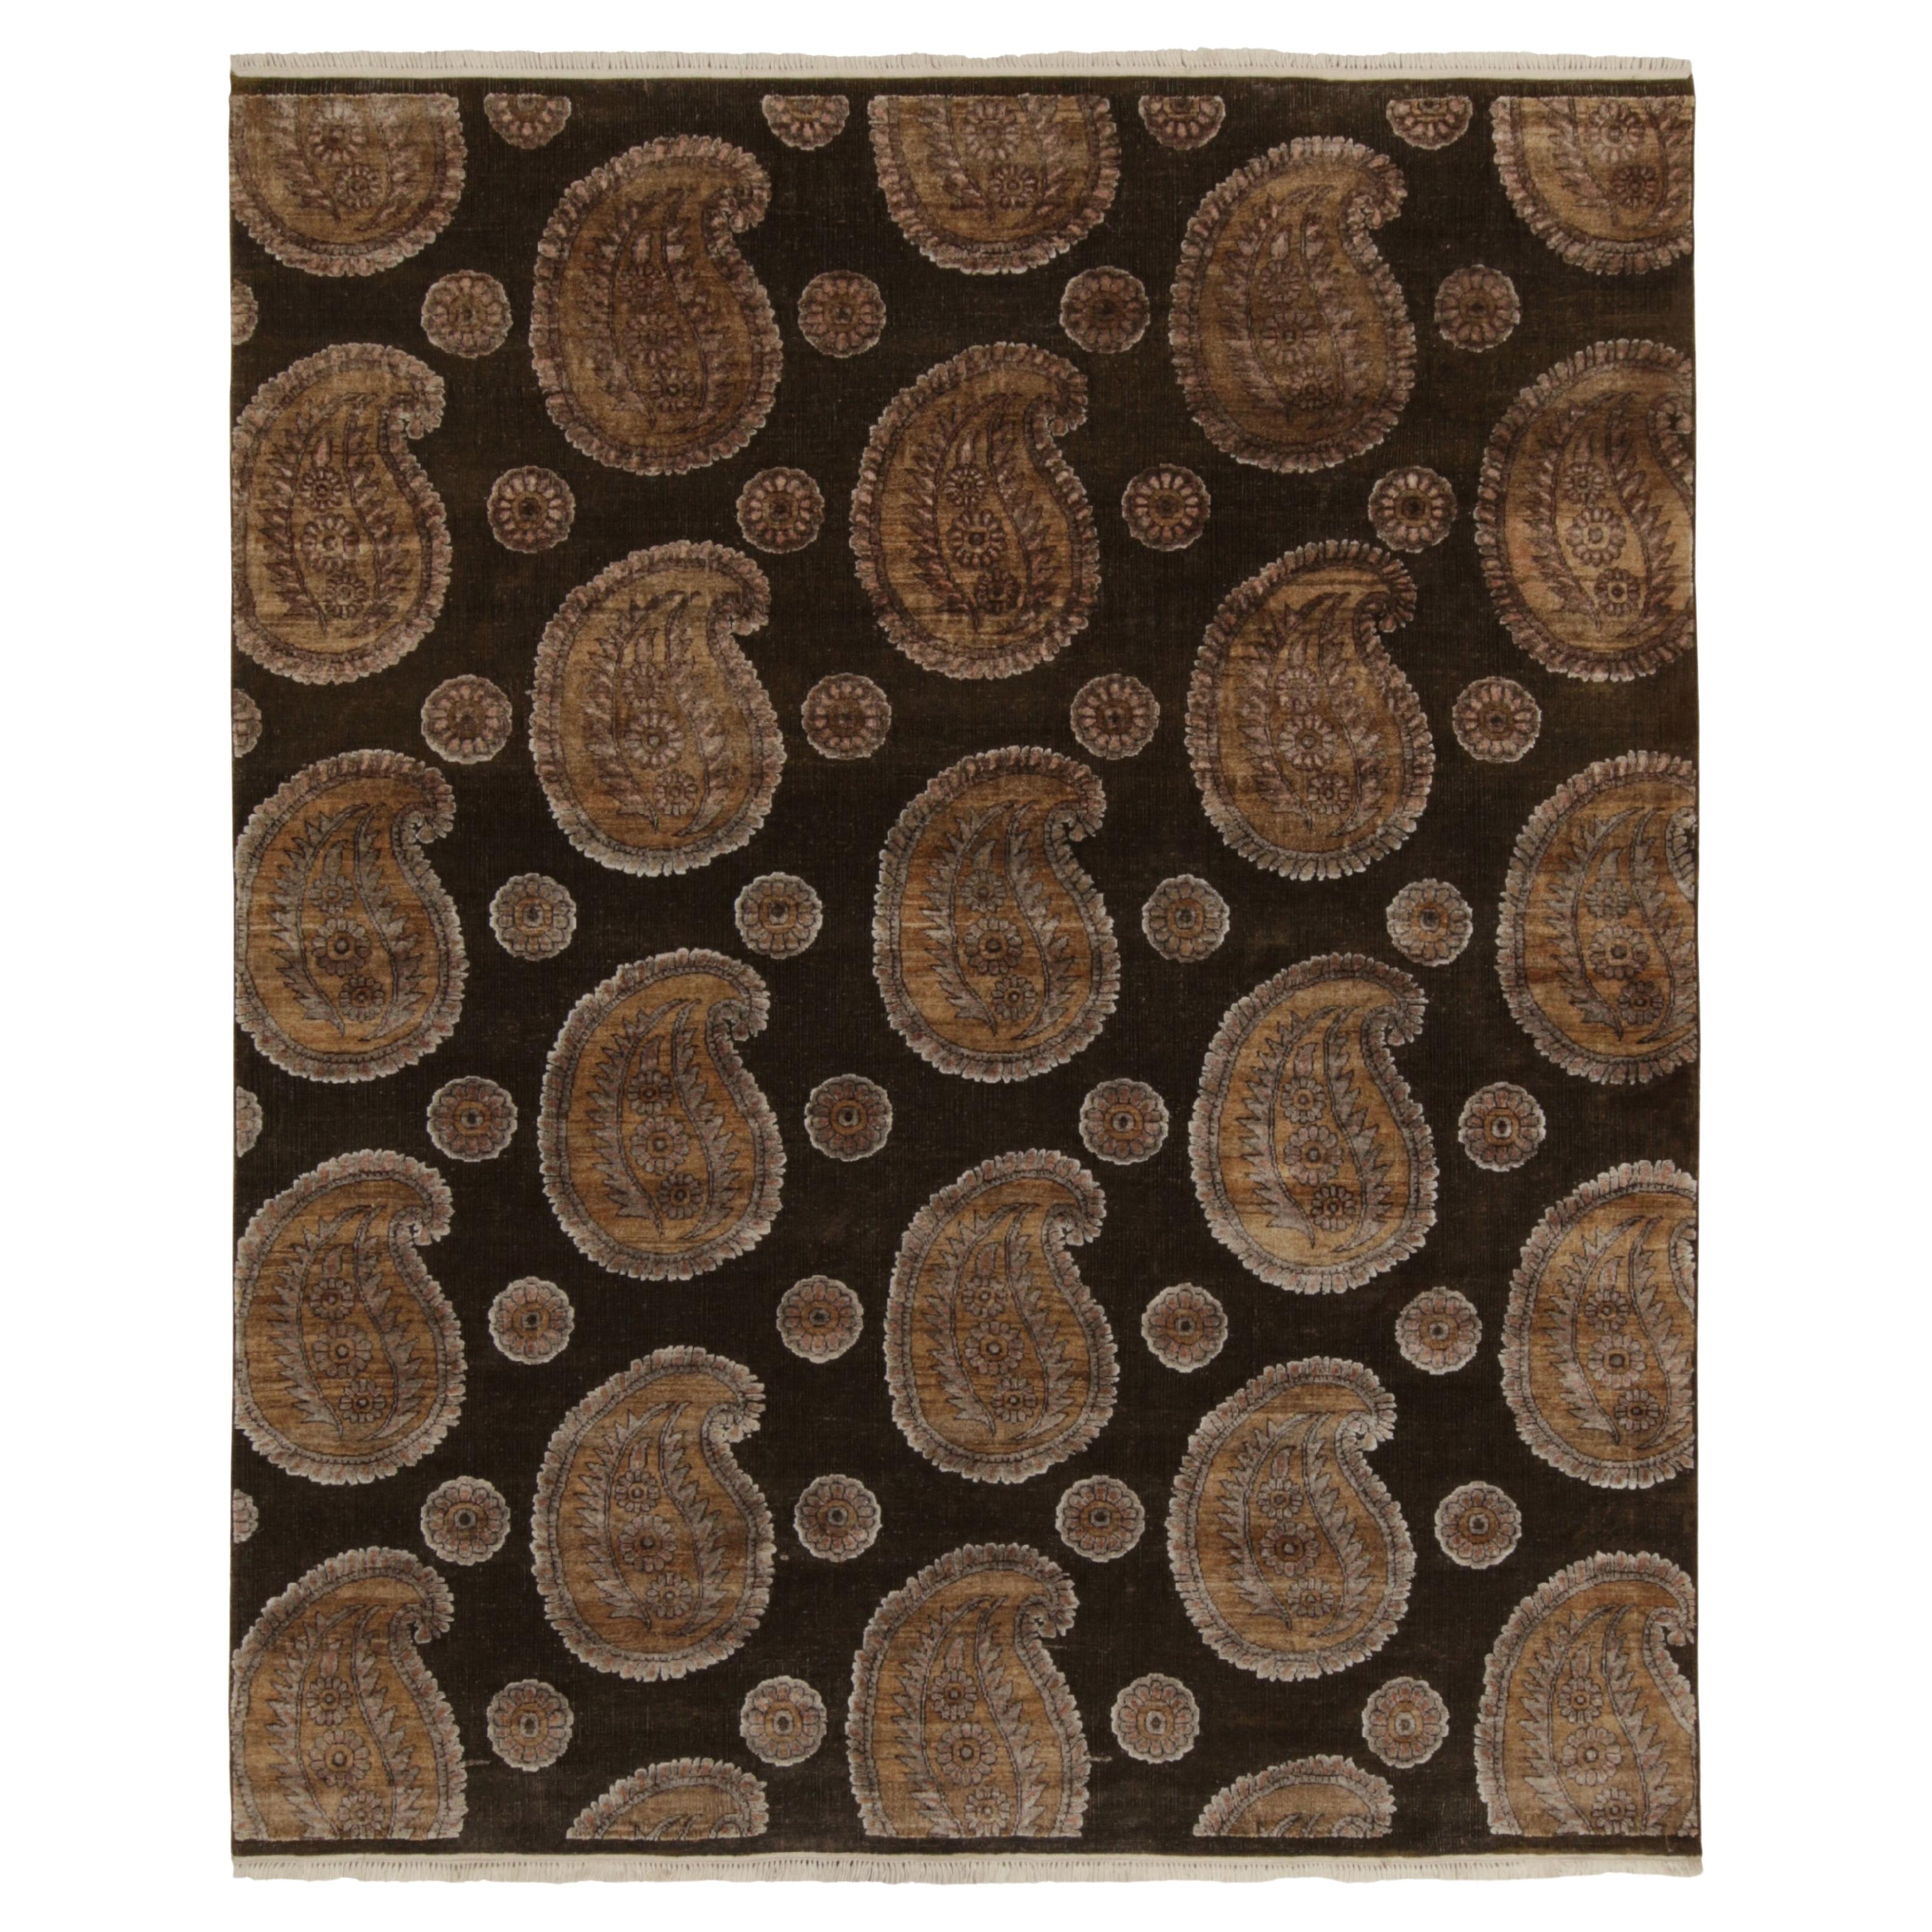 Teppich & Kilims im klassischen Stil in Beige, Braun und Gold mit Paisley-Muster